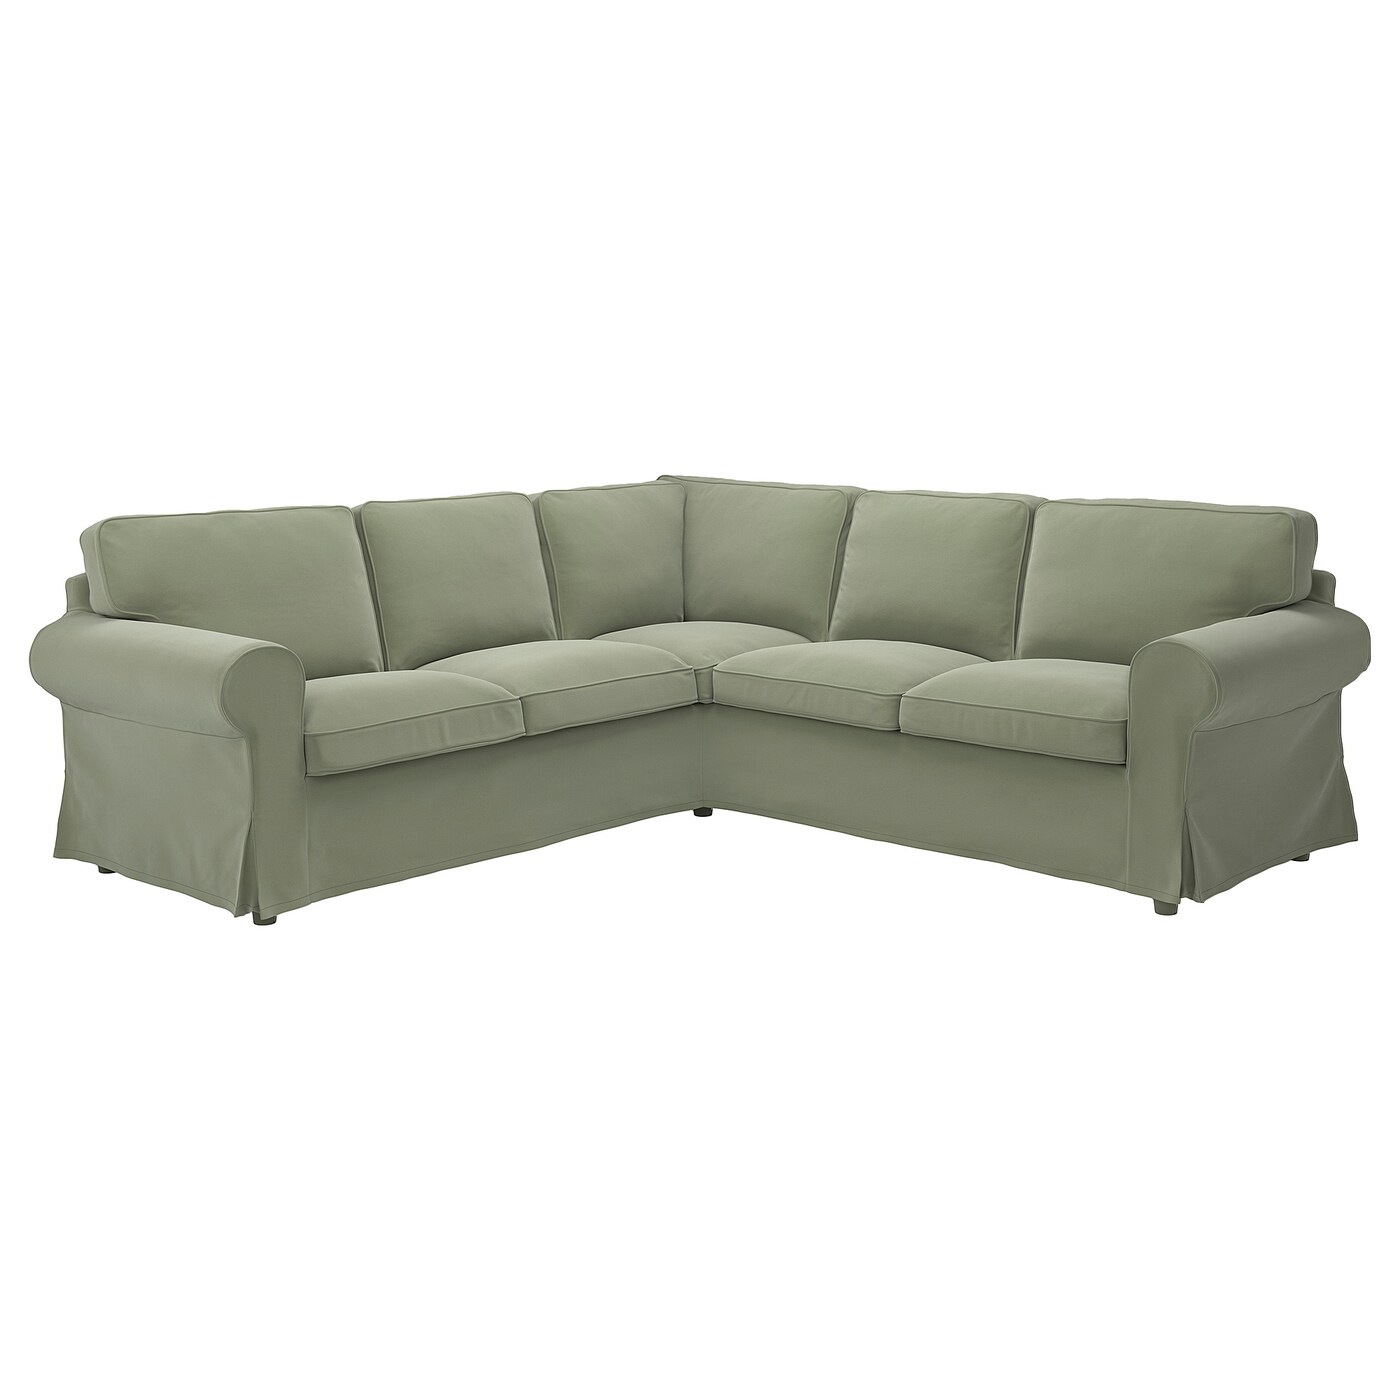 ЭКТОРП 4-местный угловой диван, Хакебо серо-зеленый EKTORP IKEA чехол на 2 местный угловой диван ikea ektorp светло серый